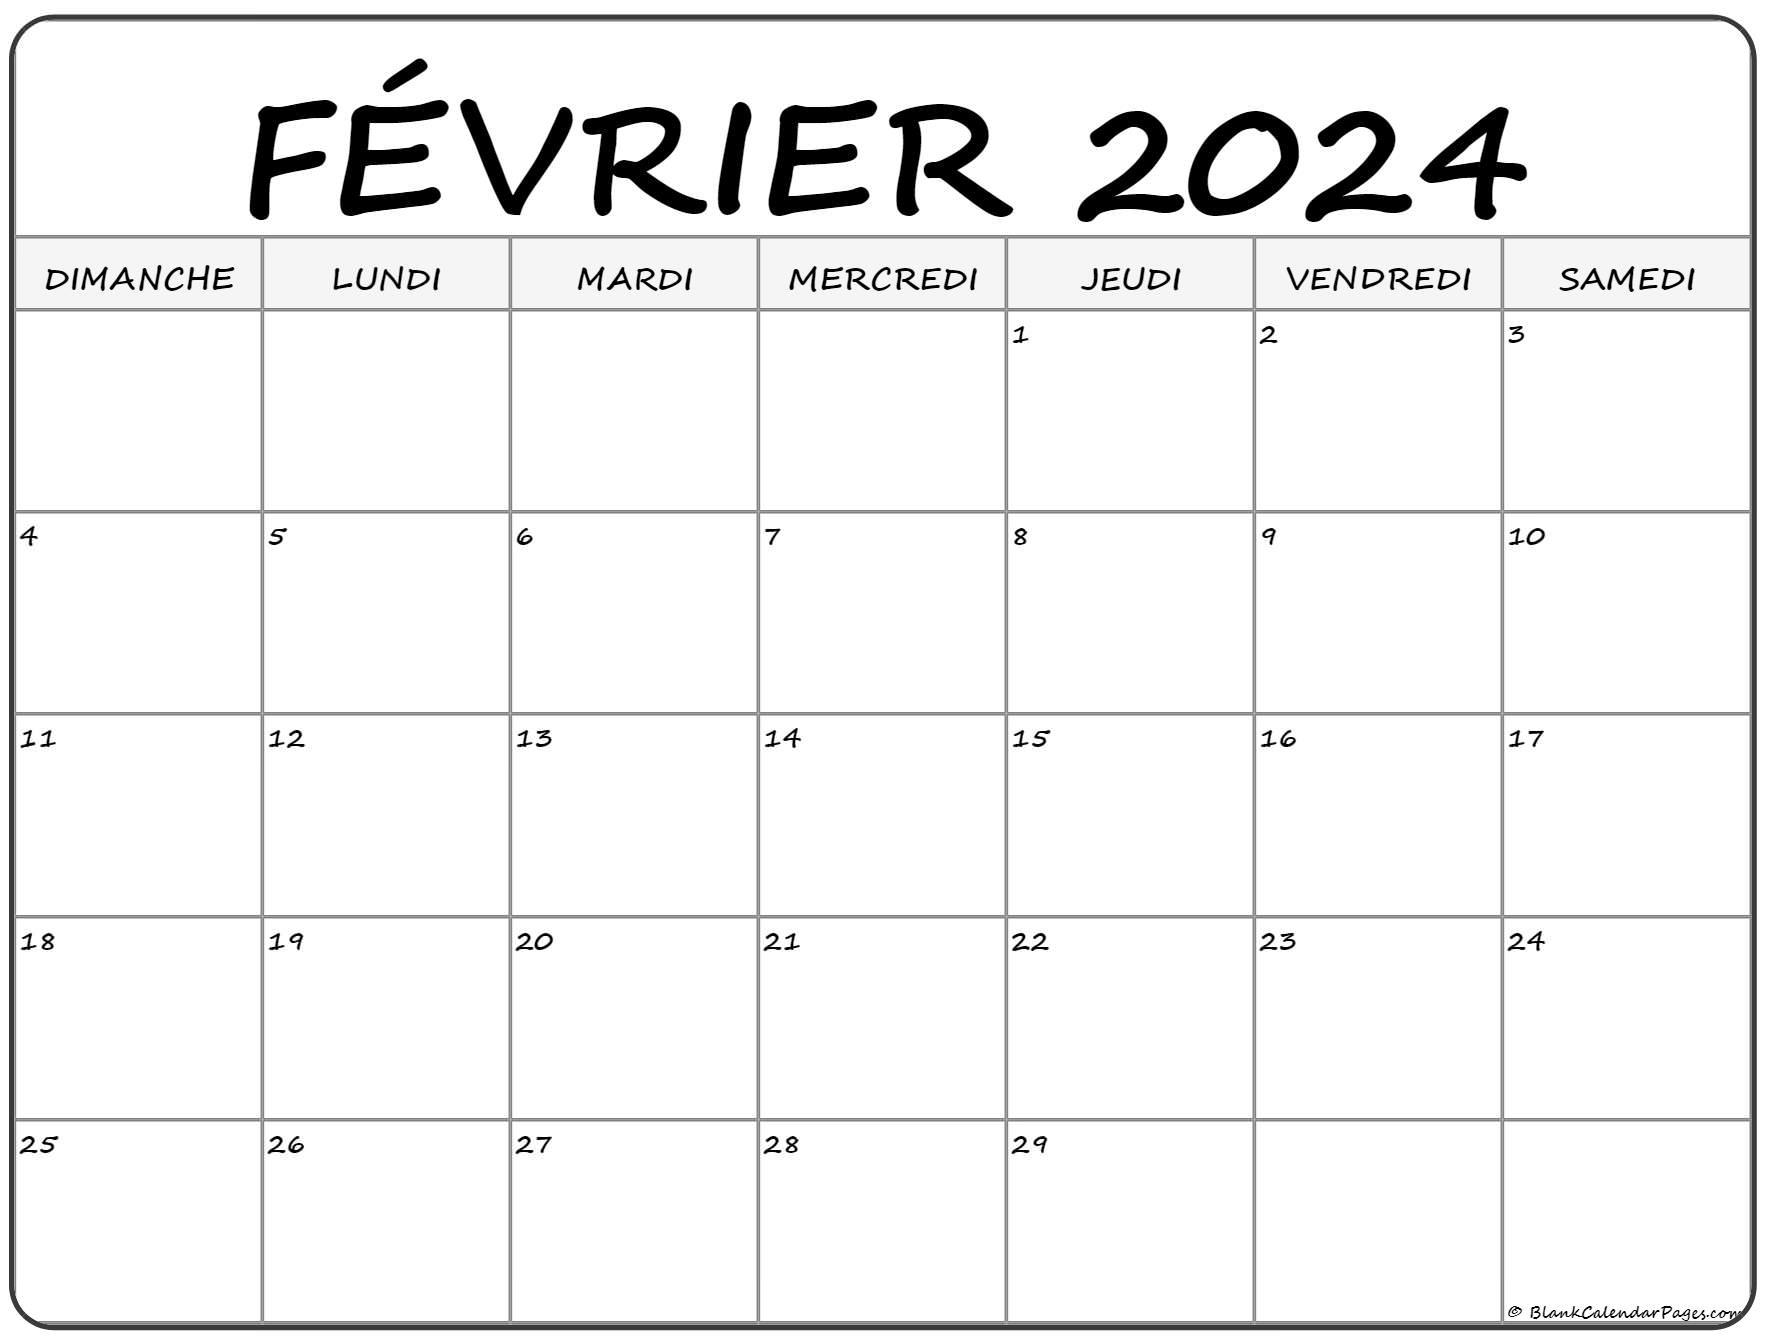 Calendrier Janvier Février 2022 février 2022 calendrier imprimable | Calendrier gratuit